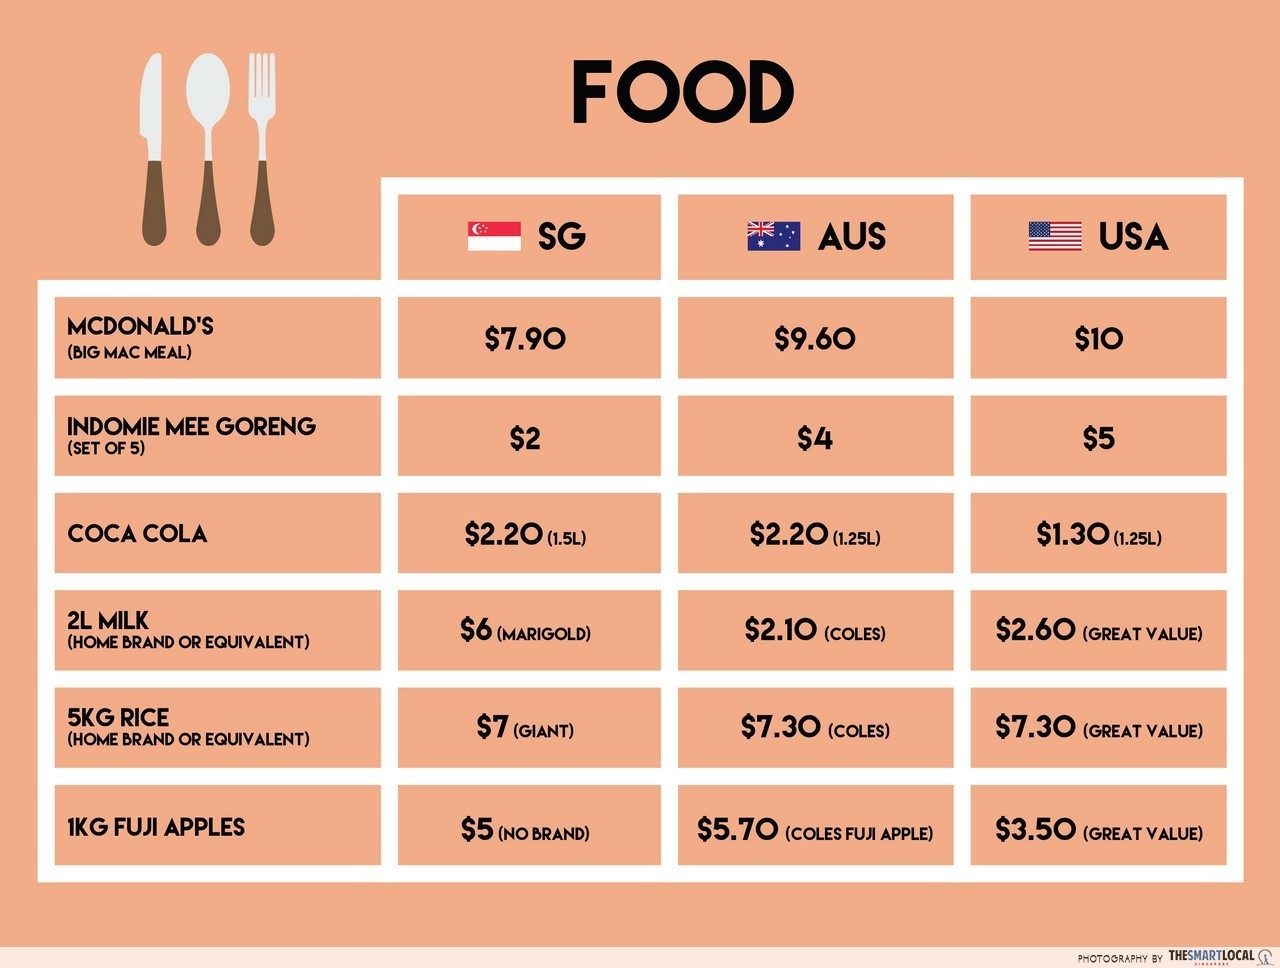 Cost of living: Australia vs USA